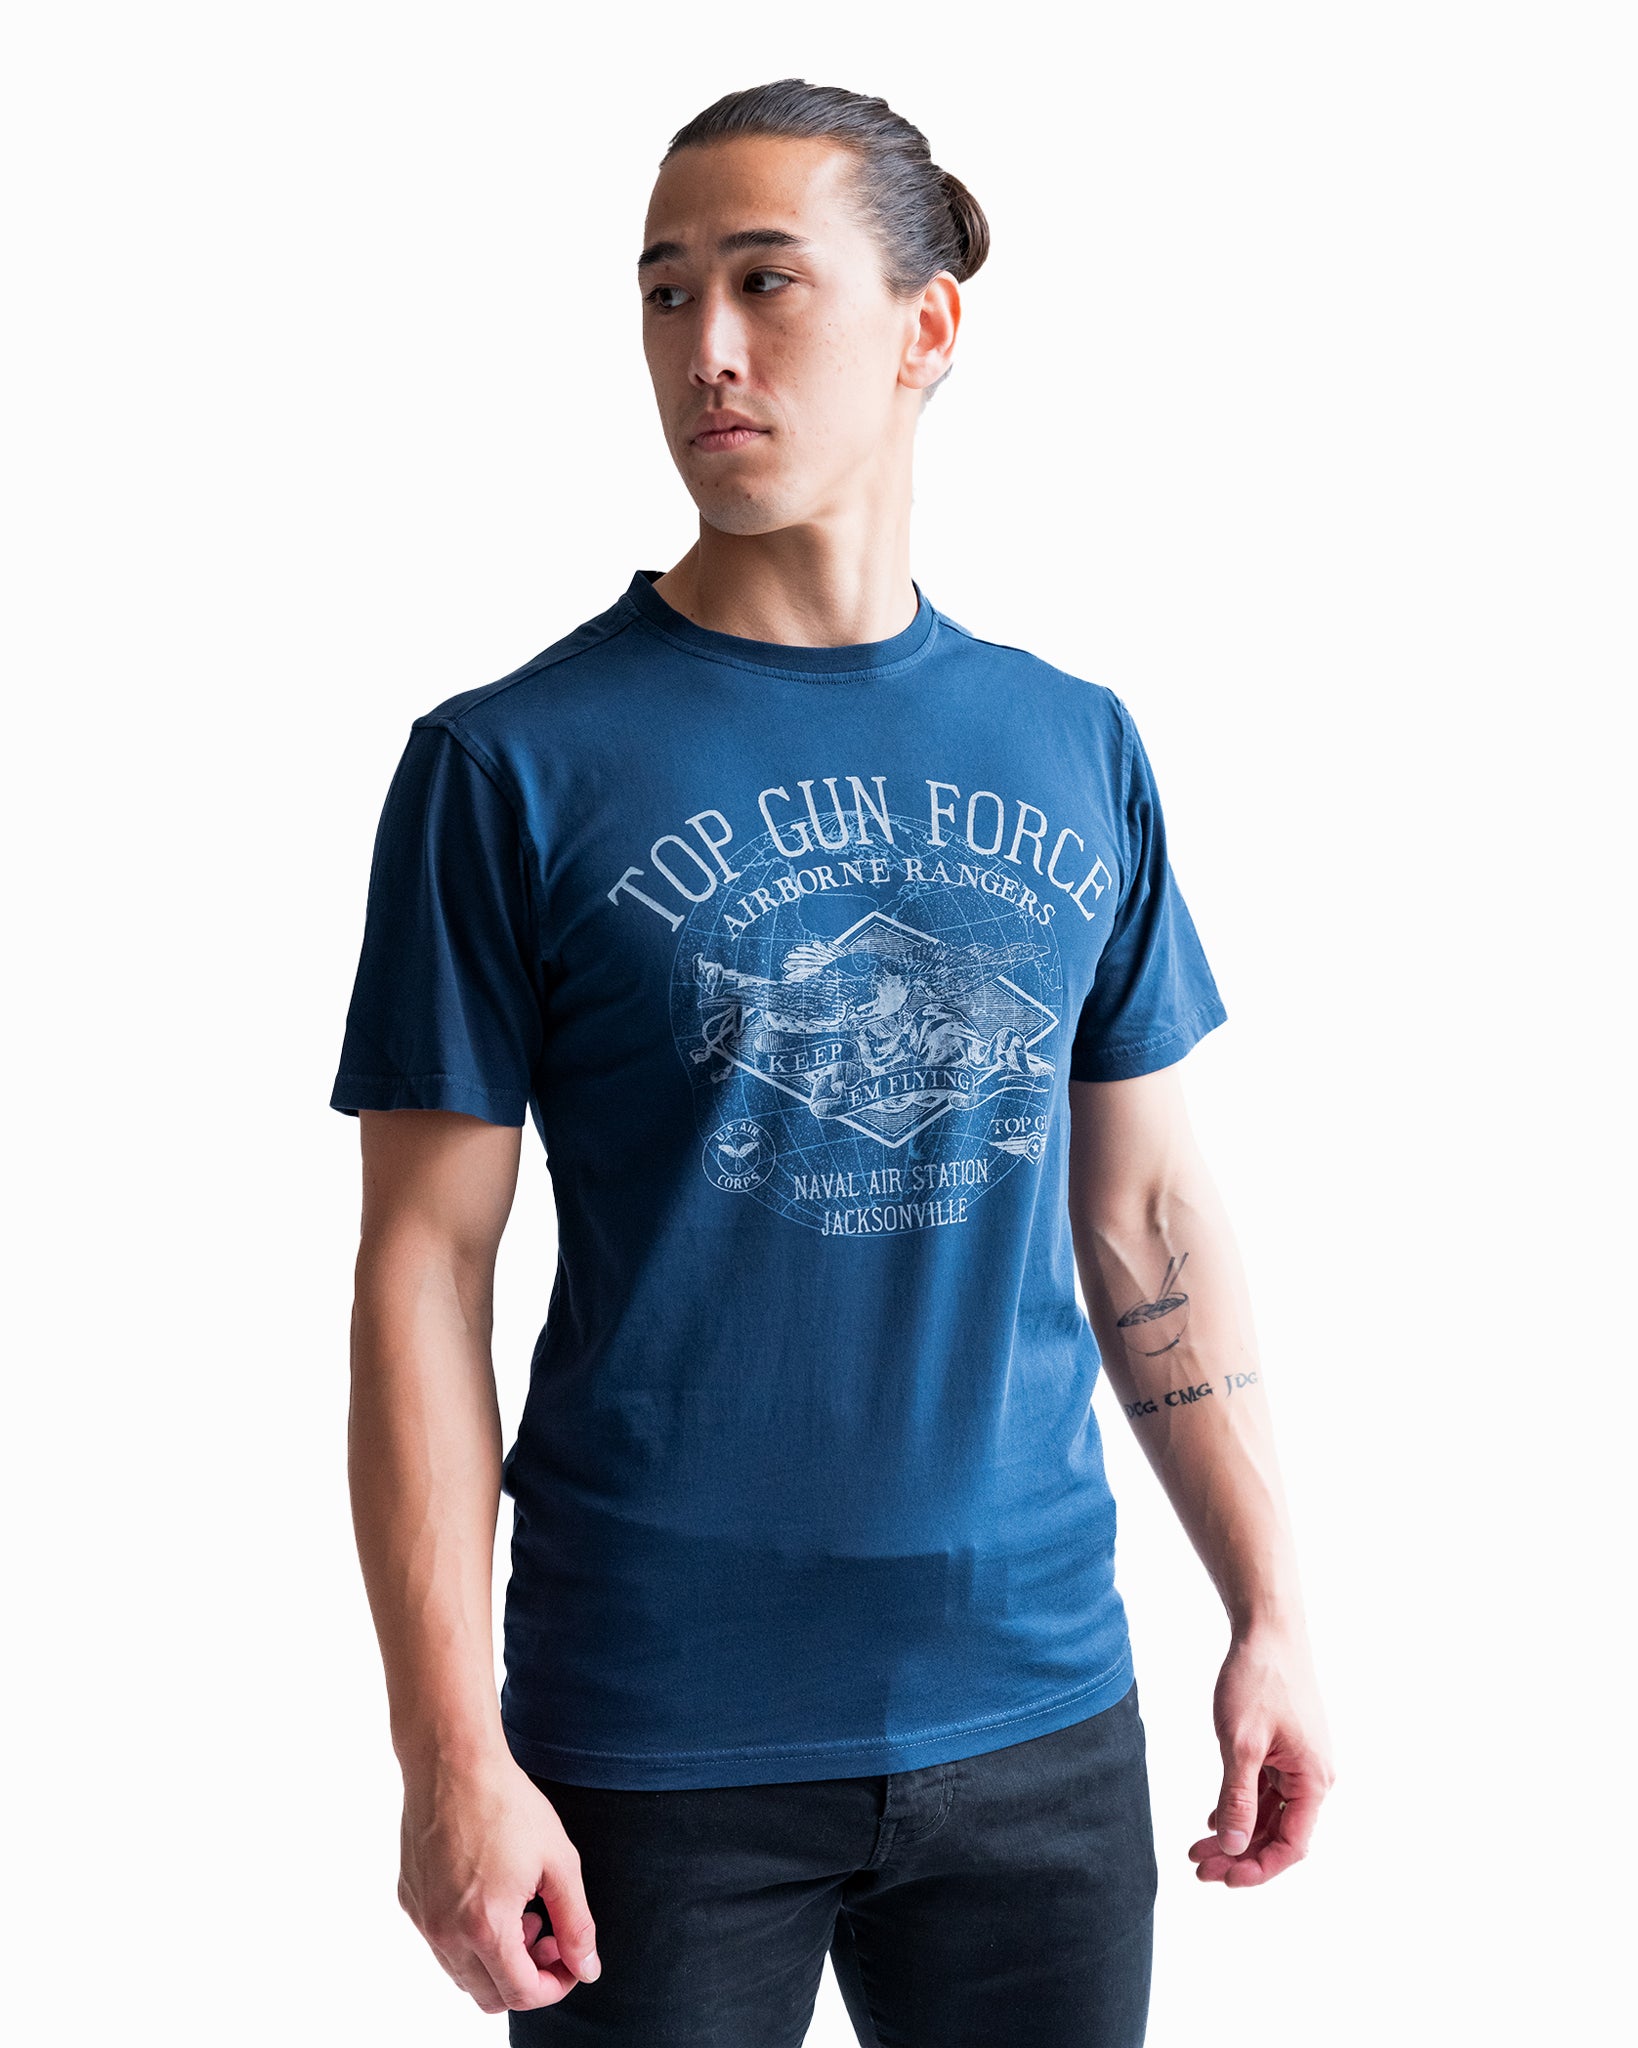 Men\'s Tees & T-Shirts | THE OFFICIAL TOP GUN STORE | Cotton Summer T-Shirts,  Best Men\'s Tees, top gun movie merchandise, Tees – Top Gun Store